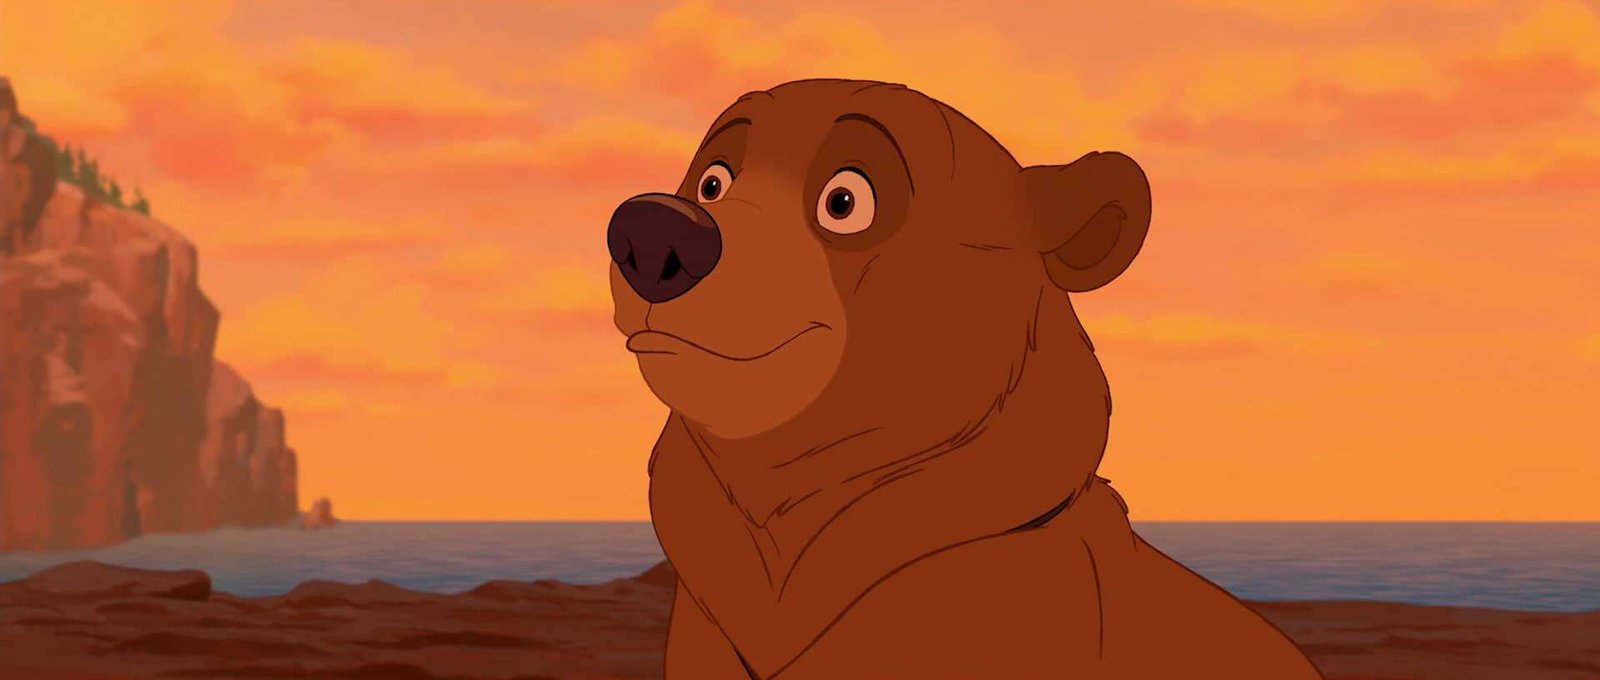 Image animée d'un ours brun avec une expression surprise, sur un coucher de soleil vibrant avec un ciel orange et des personnages Disney se découpant sur les falaises en arrière-plan.